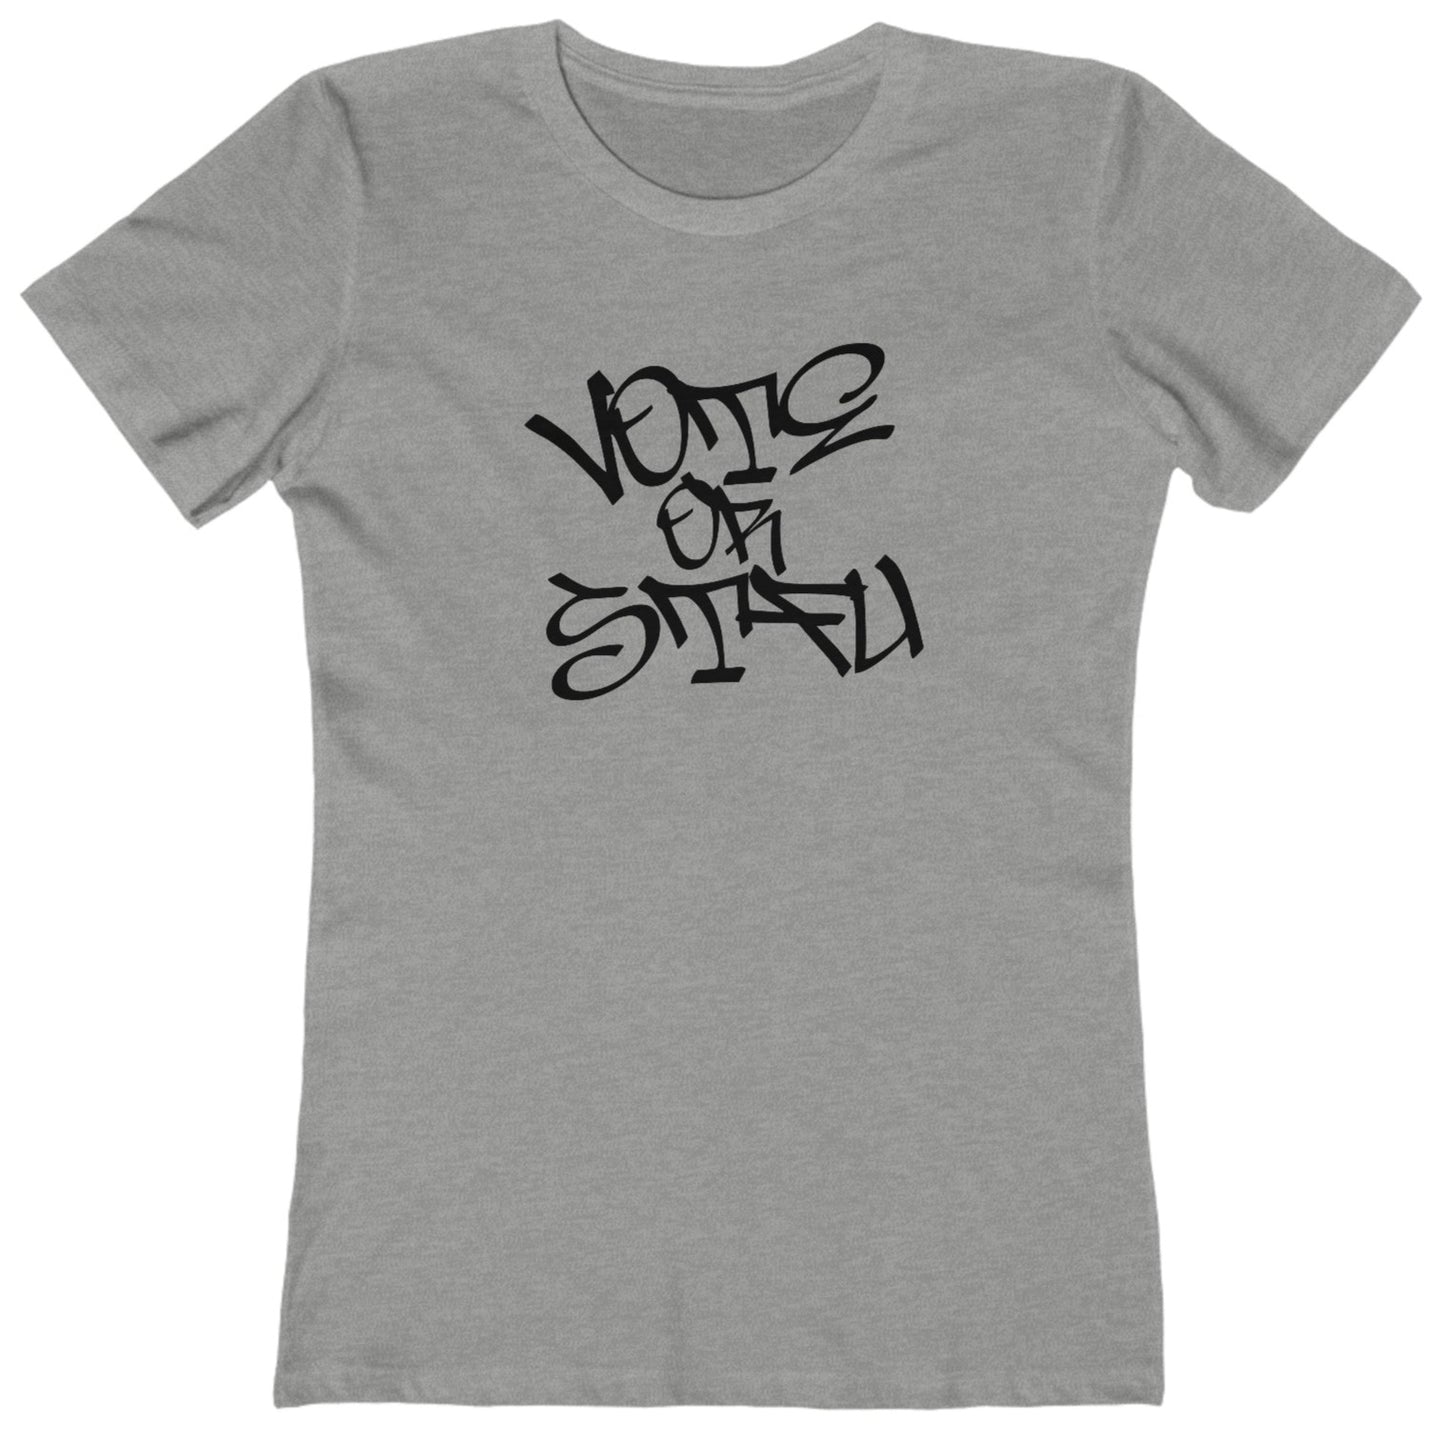 Vote graffiti t shirt